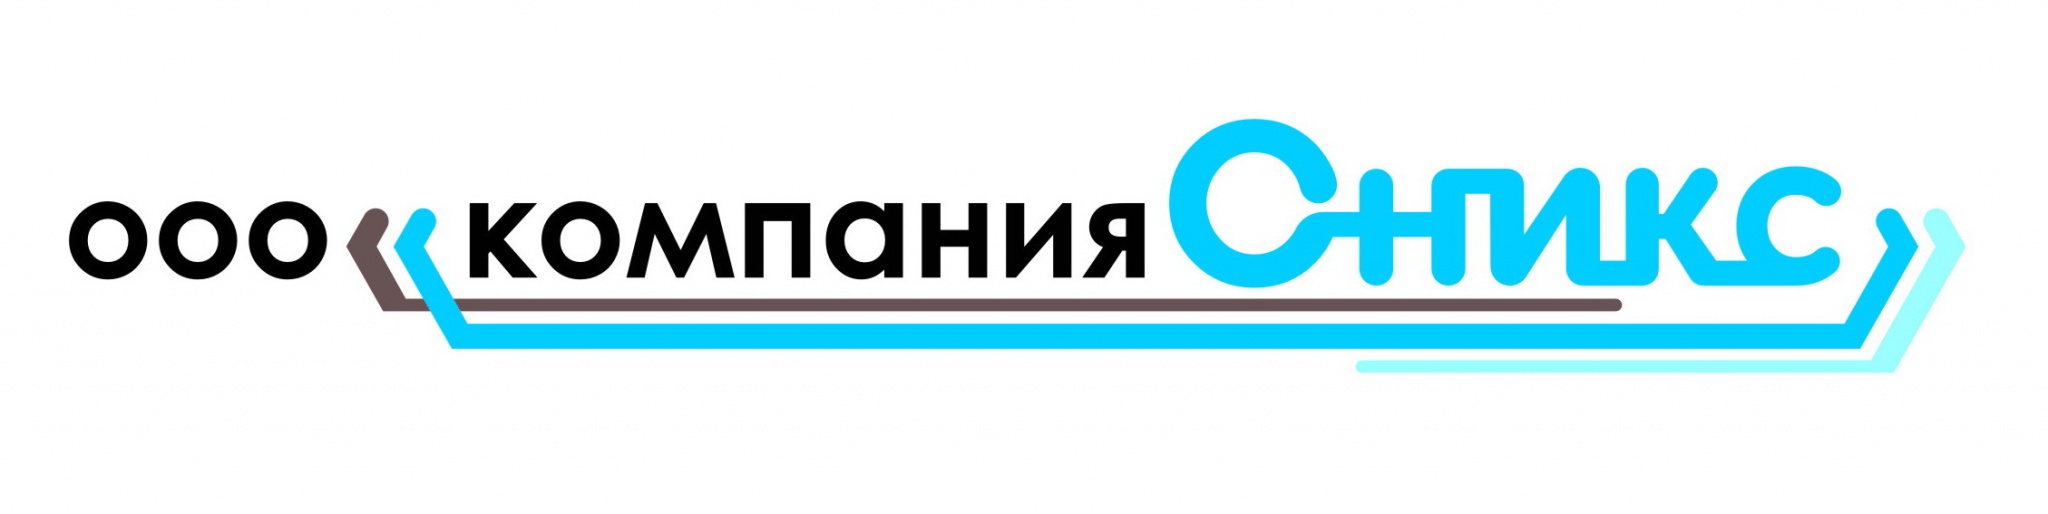 Логотип Оникс.jpg